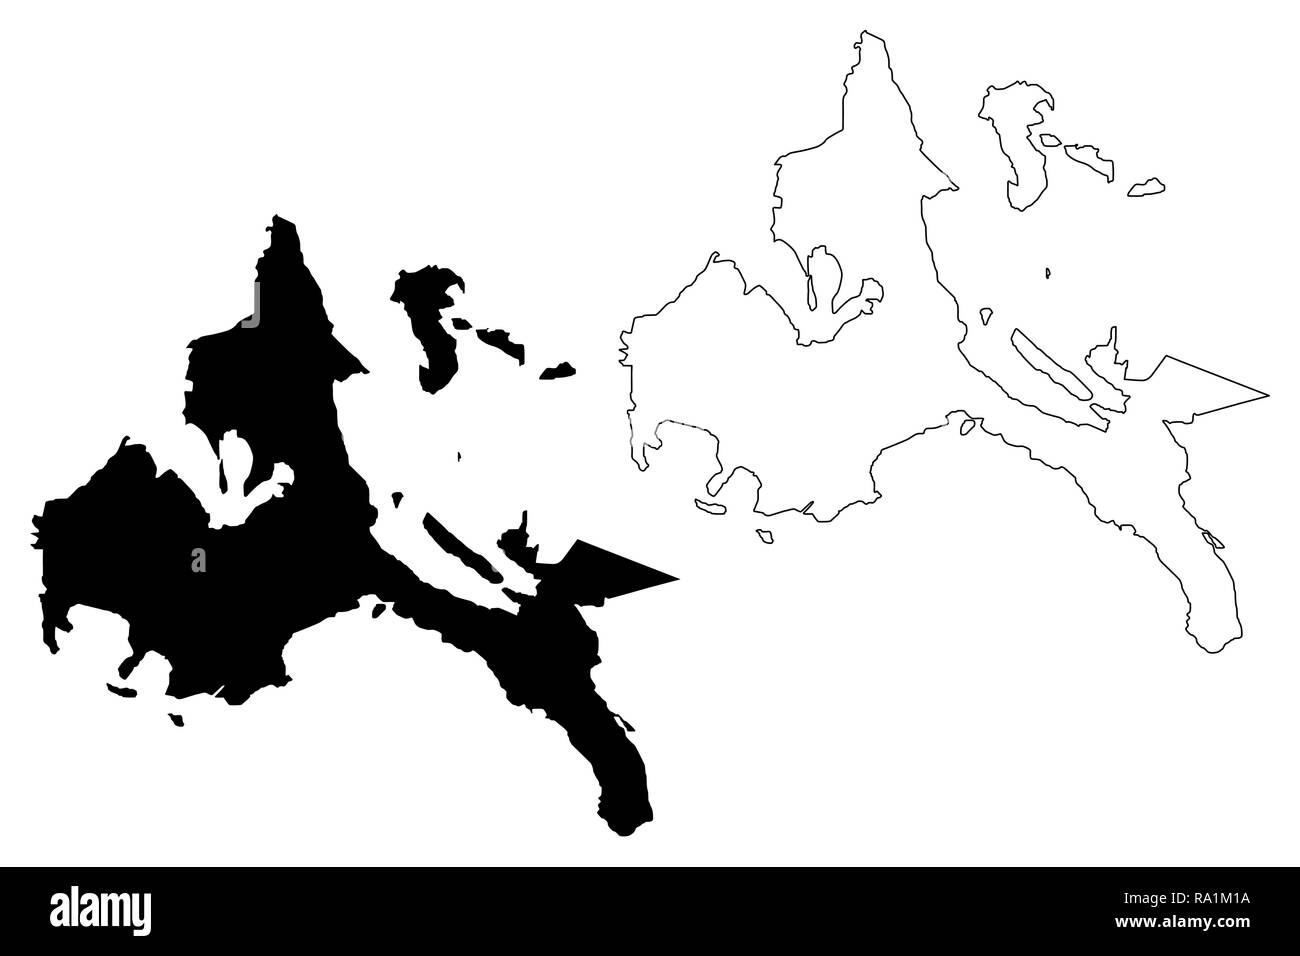 Calabarzon Region (Regionen und Provinzen der Philippinen, die Republik der Philippinen) Karte Vektor-illustration, kritzeln Skizze Southern Tagalog Ma Stock Vektor